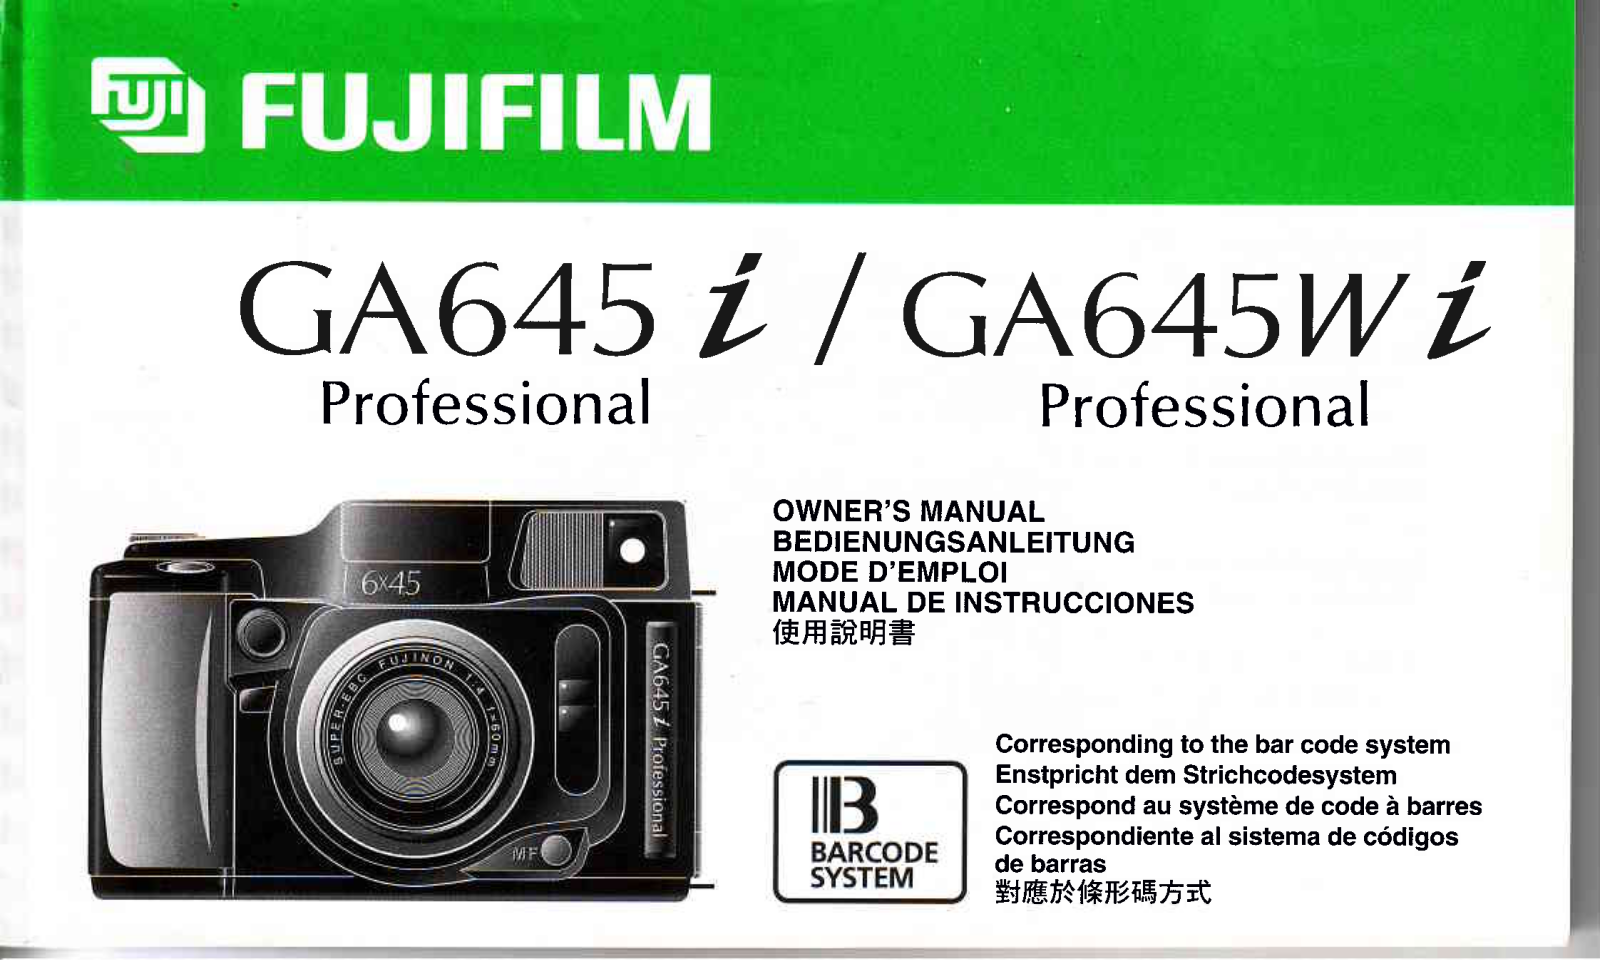 Fujifilm GA645 i, GA645 Wi Owner's Manual